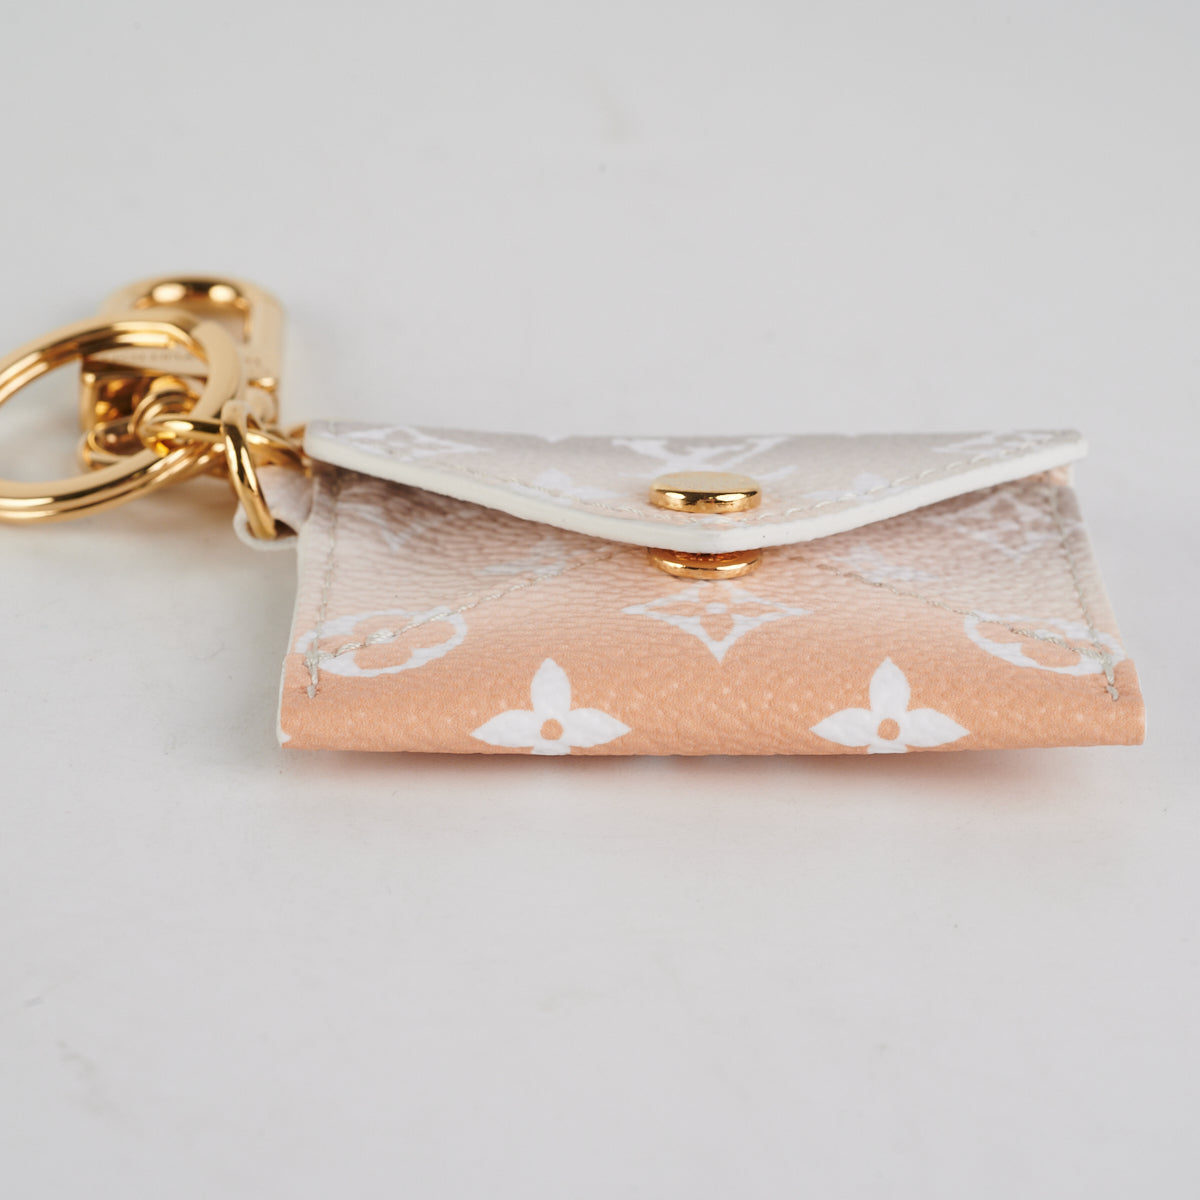 Louis Vuitton Kirigami Bag Charm/Key Chain - THE PURSE AFFAIR